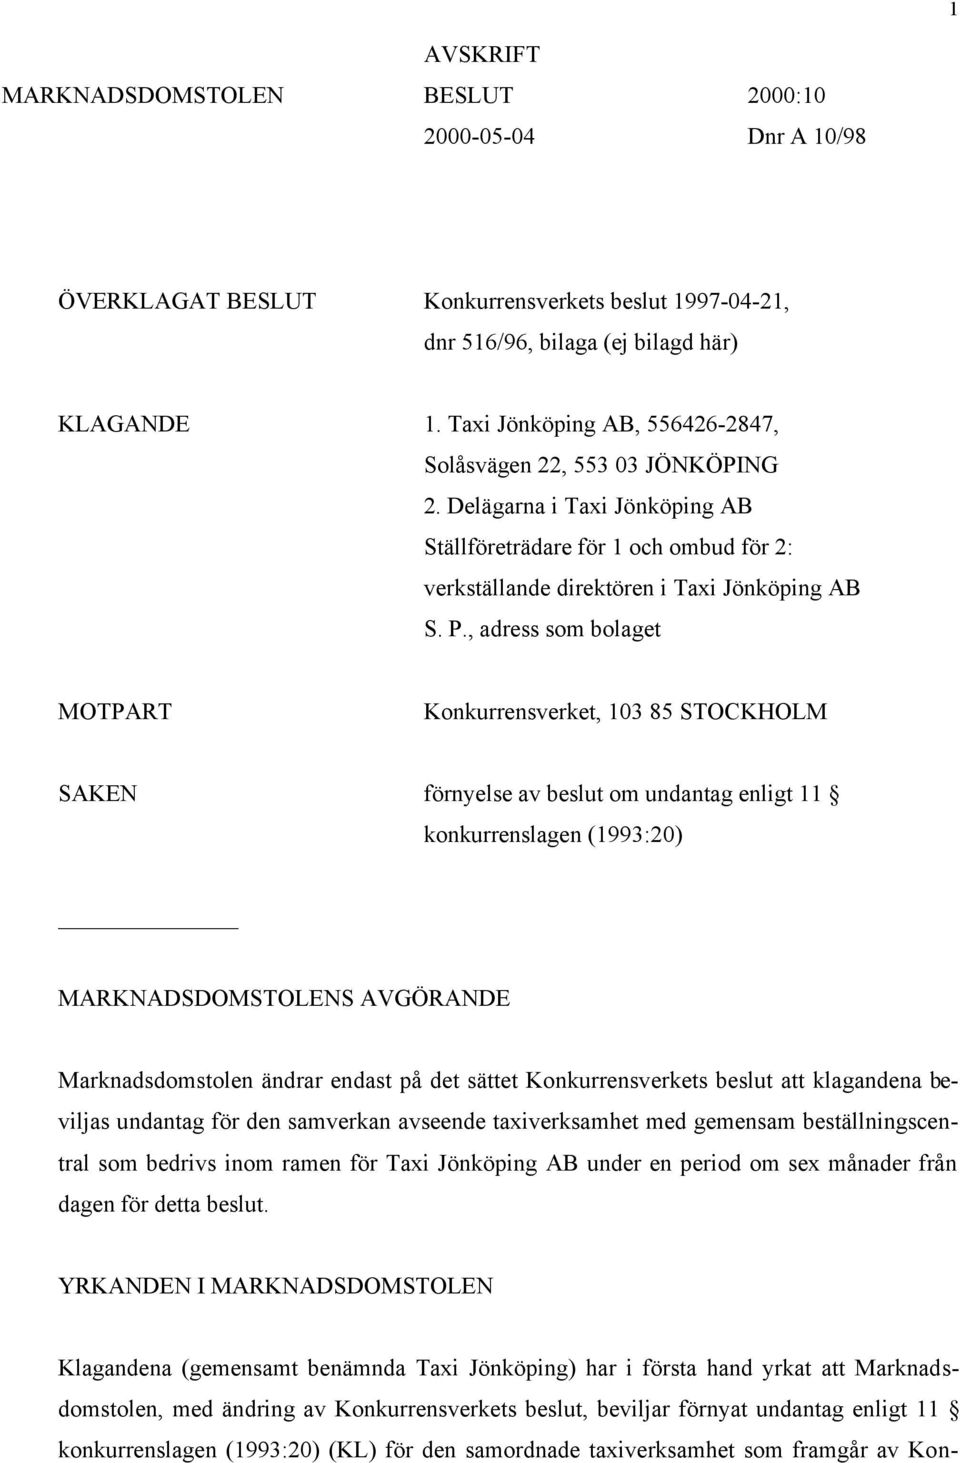 , adress som bolaget MOTPART Konkurrensverket, 103 85 STOCKHOLM SAKEN förnyelse av beslut om undantag enligt 11 konkurrenslagen (1993:20) MARKNADSDOMSTOLENS AVGÖRANDE Marknadsdomstolen ändrar endast